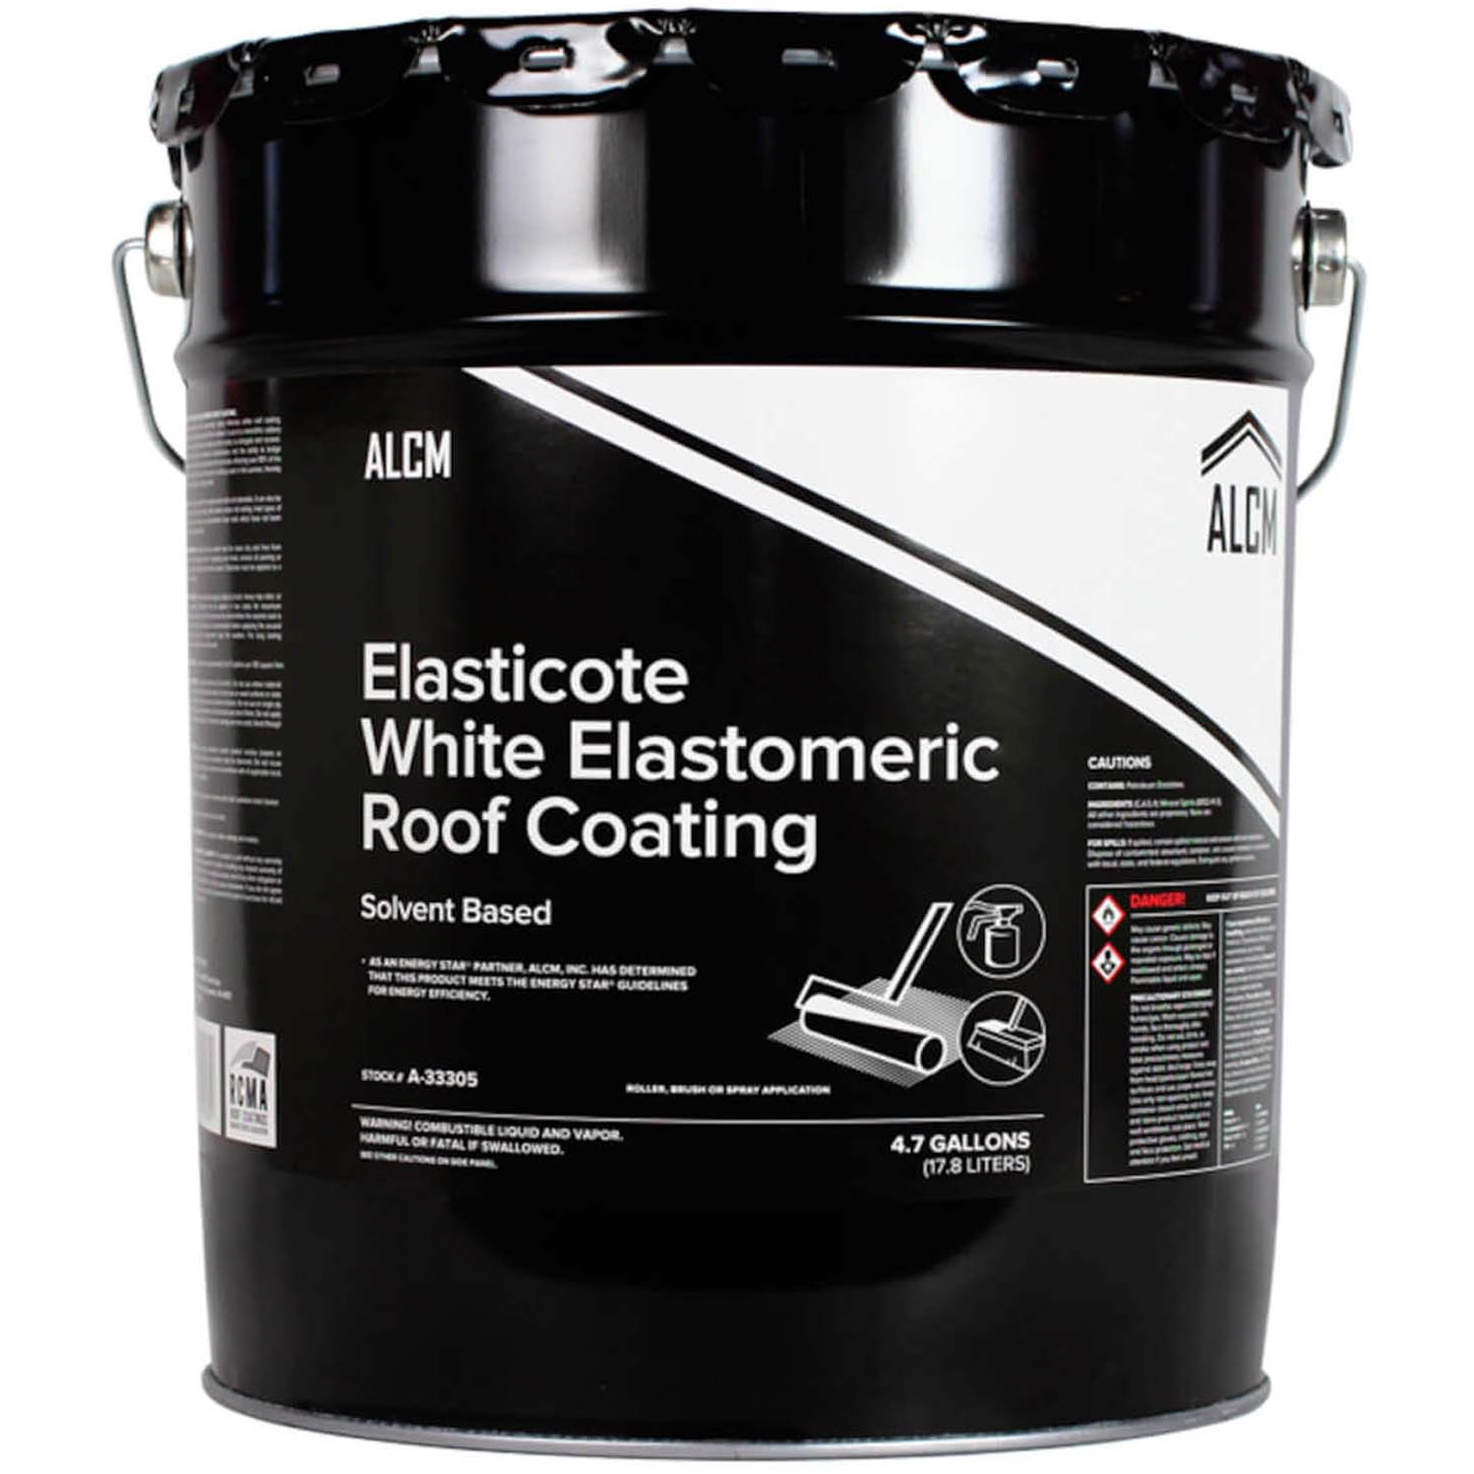 ALCM Elasticote White Elastomeric Roof Coating (Solvent-Based)